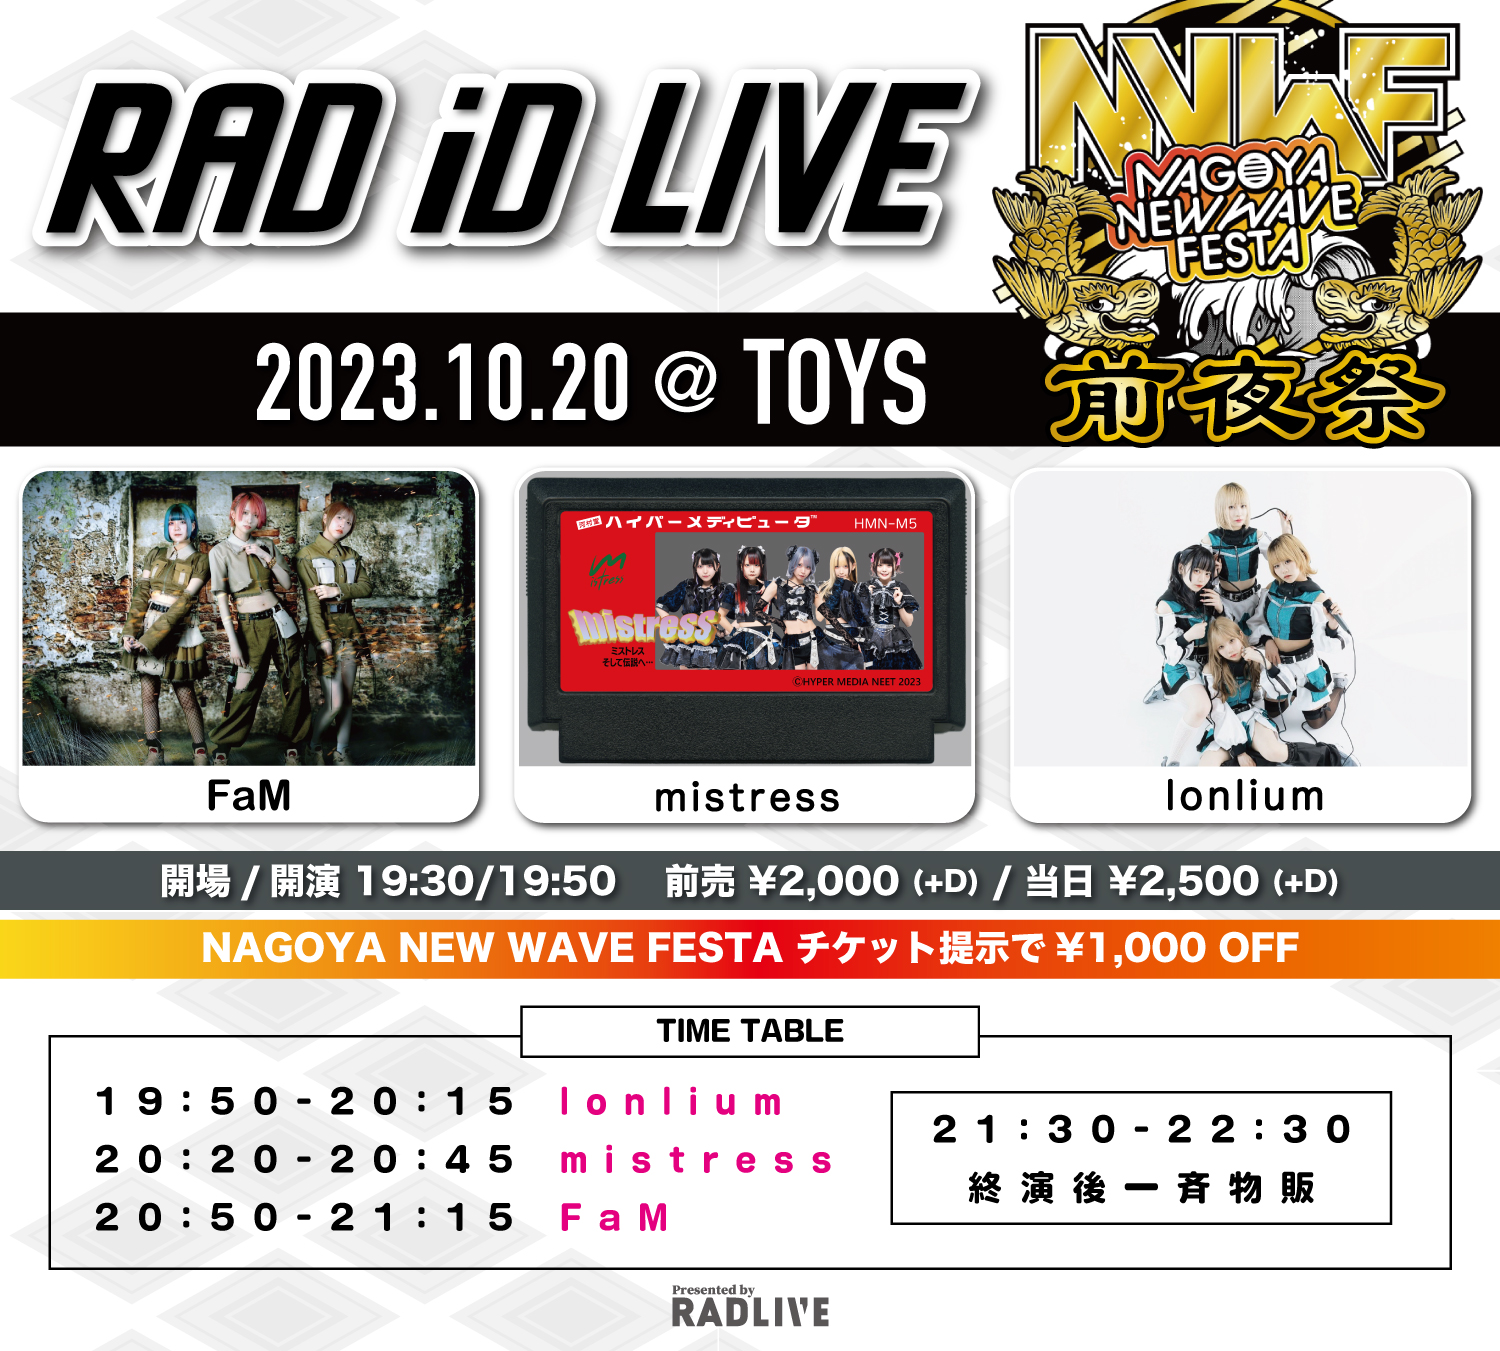 『RAD iD LIVE- NNWF前夜祭』